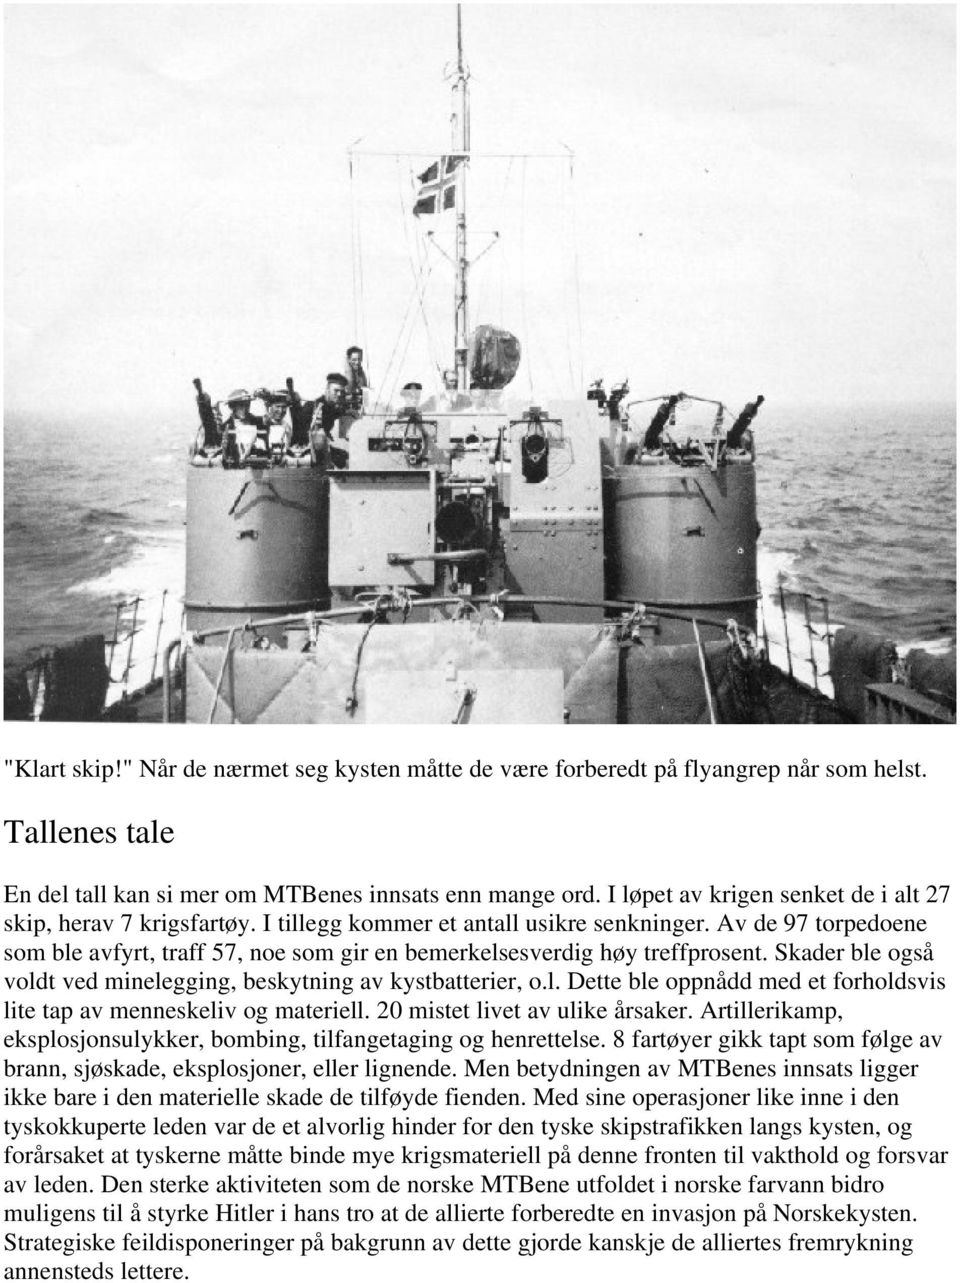 Av de 97 torpedoene som ble avfyrt, traff 57, noe som gir en bemerkelsesverdig høy treffprosent. Skader ble også voldt ved minelegging, beskytning av kystbatterier, o.l. Dette ble oppnådd med et forholdsvis lite tap av menneskeliv og materiell.